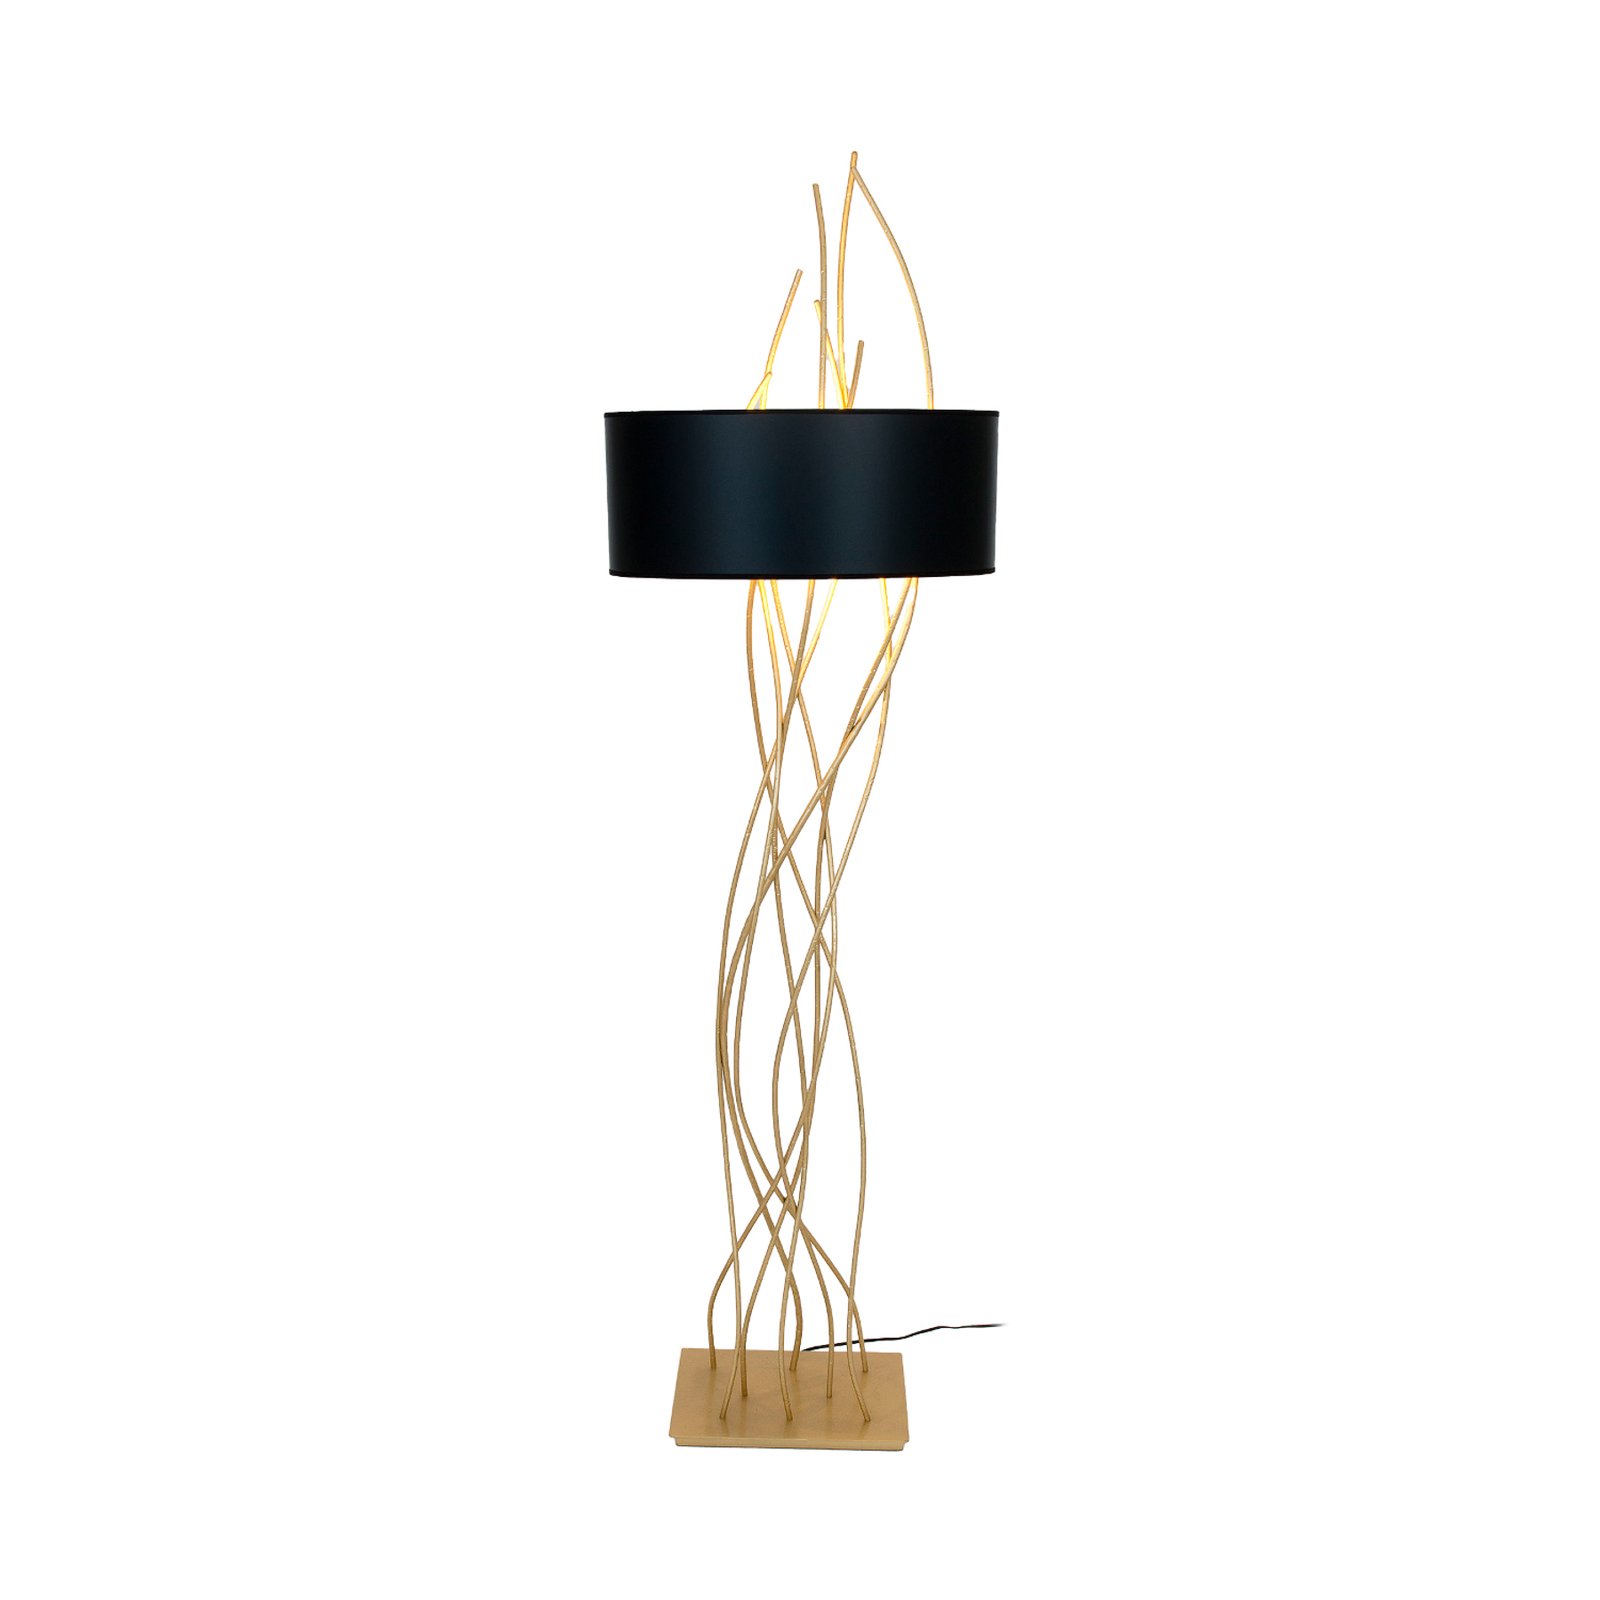 Elba oval golvlampa, guld/svart, höjd 180 cm, järn